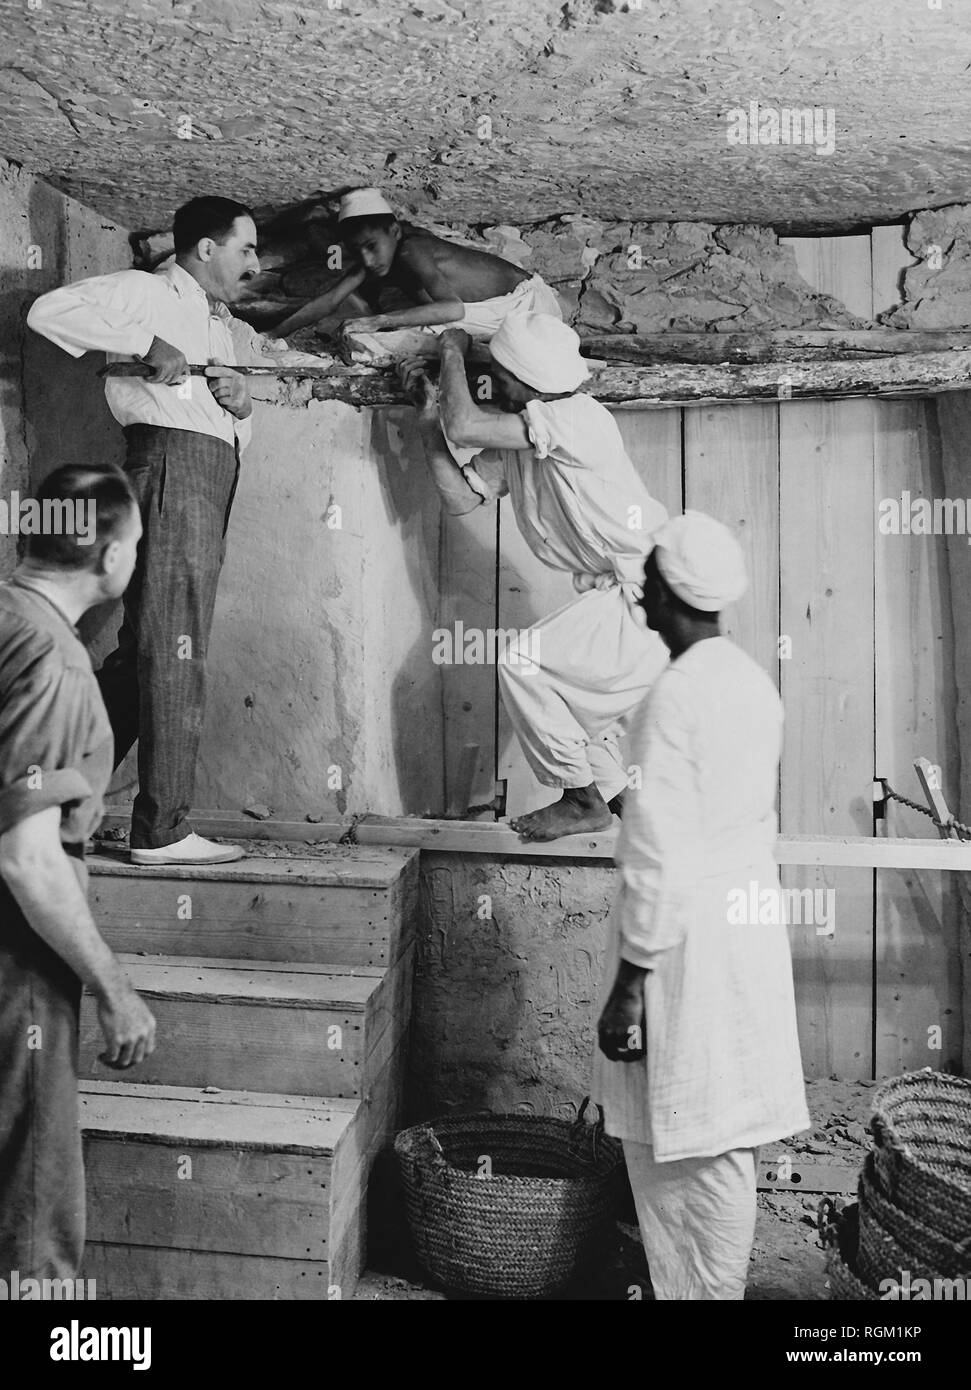 Howard Carter che ha scoperto Tutankhamon la tomba nella Valle dei Re di Luxor in Egitto. Novembre 1922. Carter servendosi di un piede di porco all'interno della tomba. Scansionata da materiale di immagine negli archivi della stampa Ritratto Service (ex premere ritratto Bureau) Foto Stock